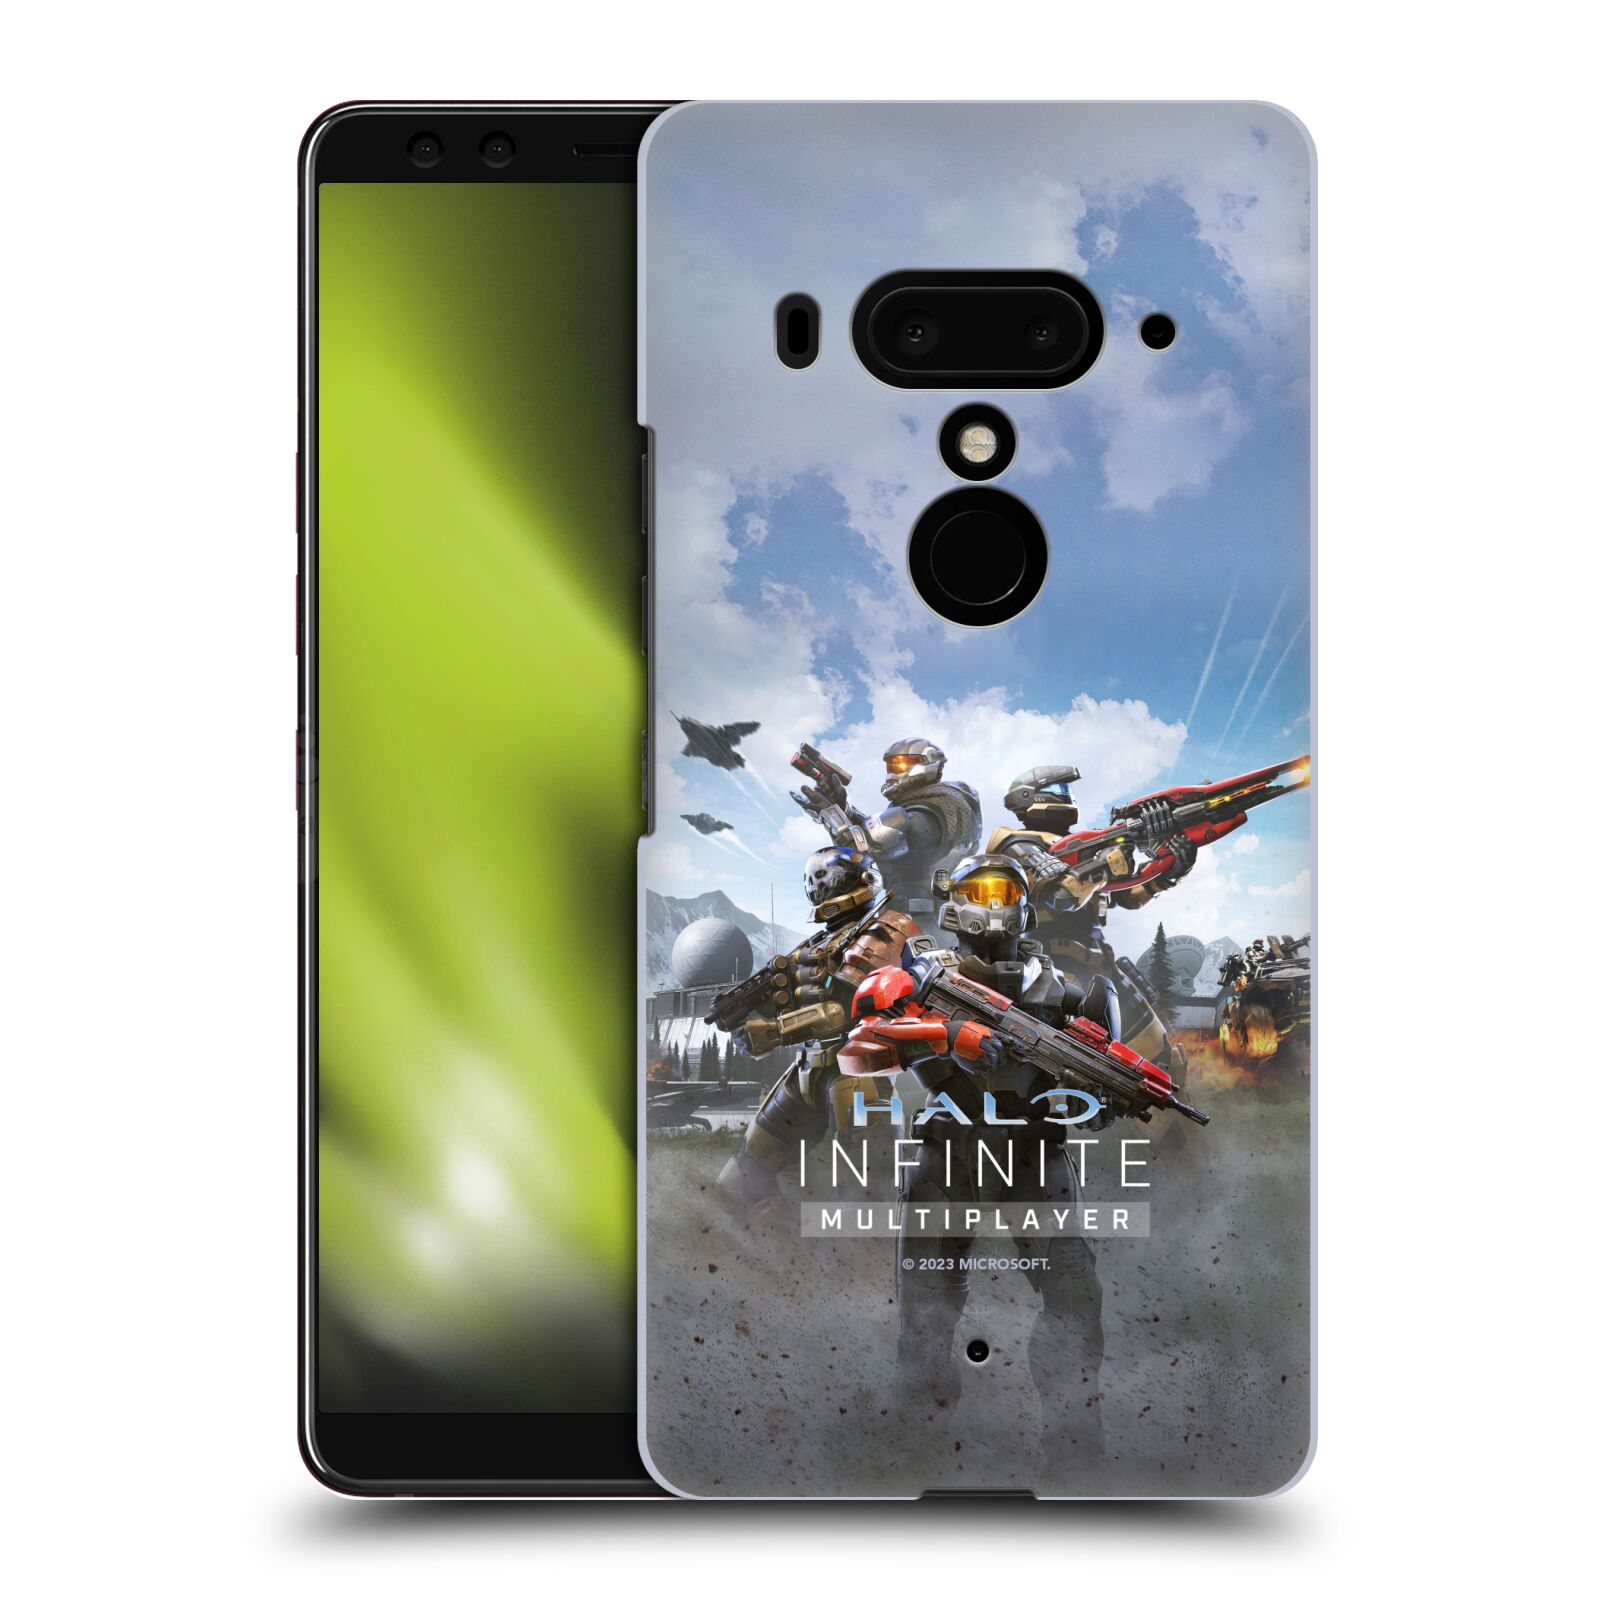 Obal na mobil HTC U 12 PLUS / U 12+ DUAL SIM - HEAD CASE  - Halo Infinite